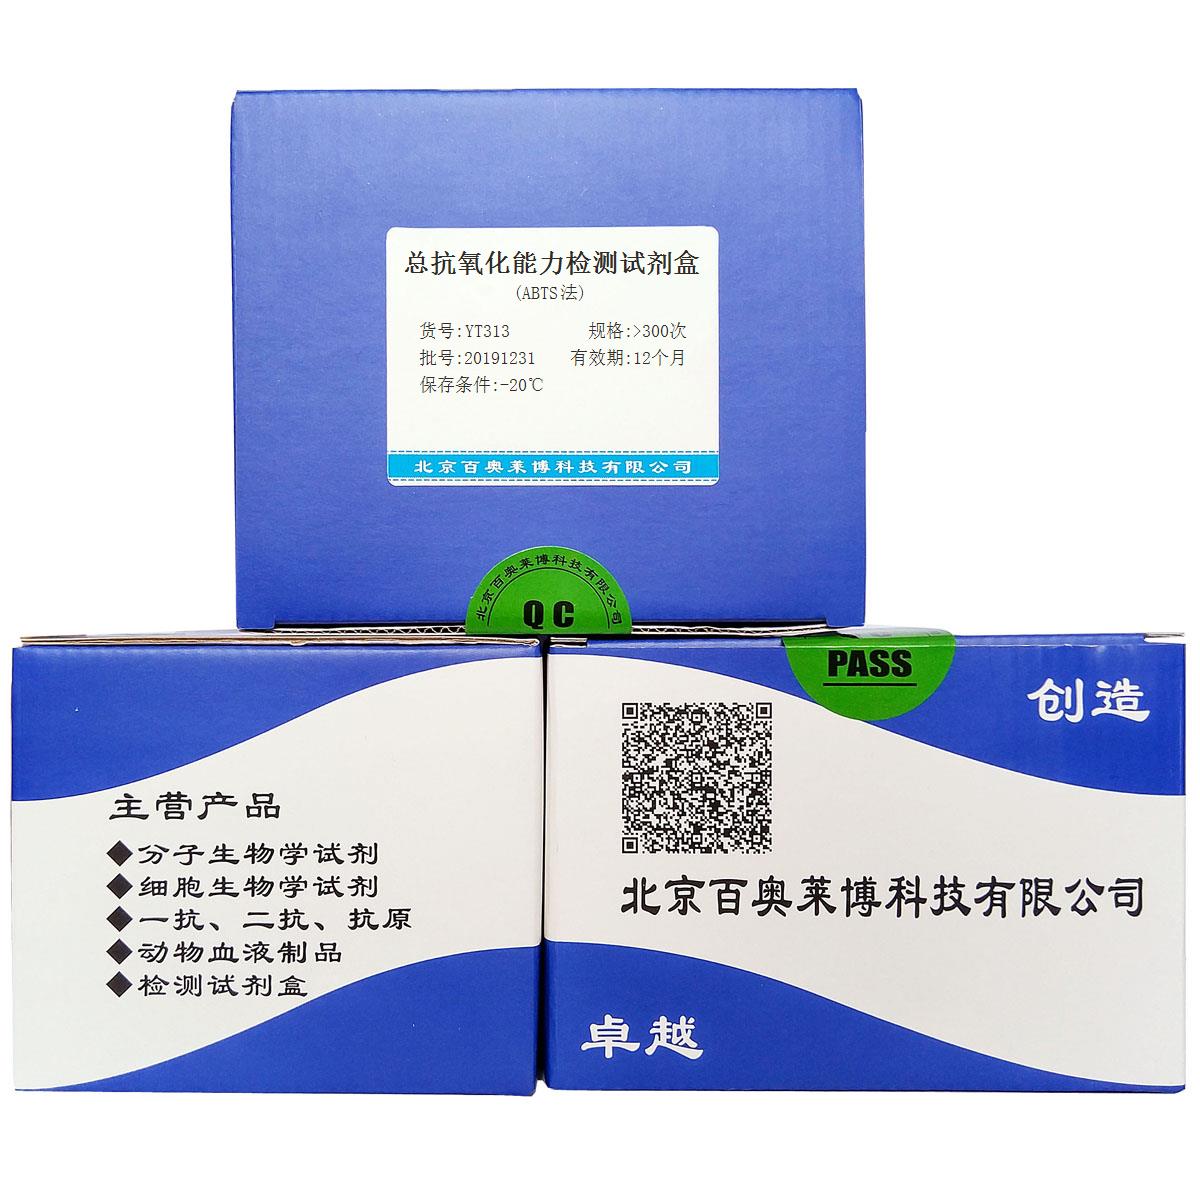 总抗氧化能力检测试剂盒(ABTS法)北京供应商